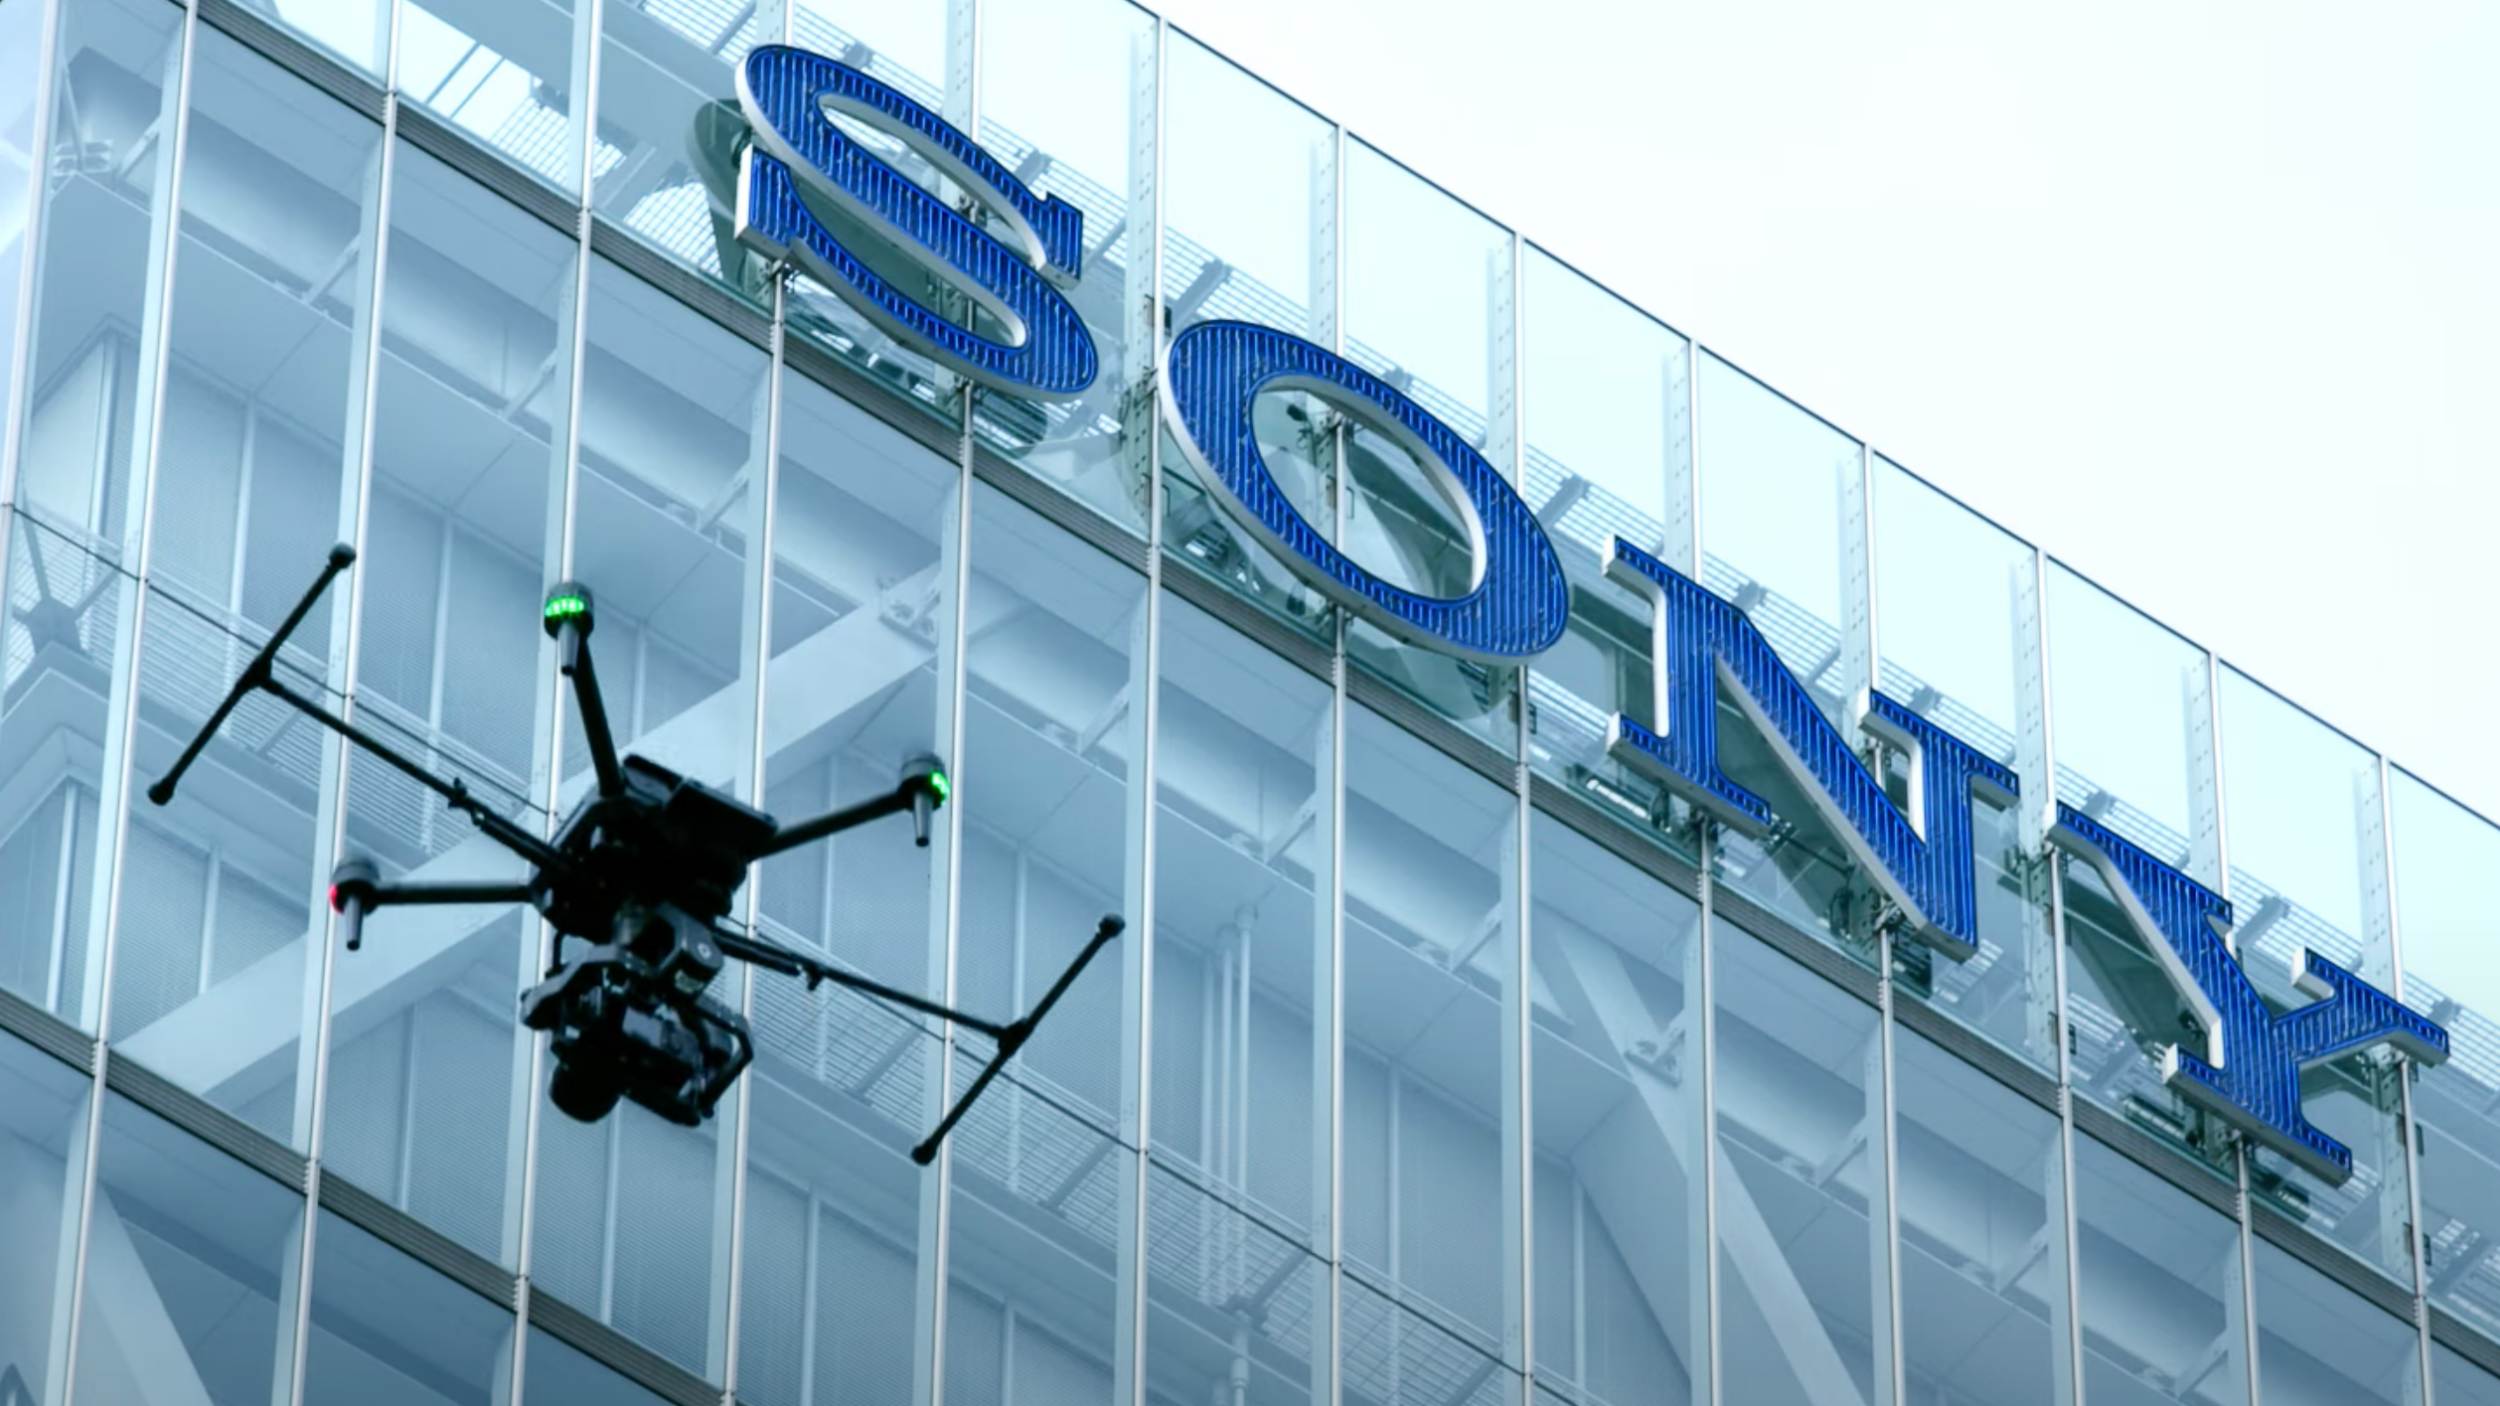 Sony Mengumumkan Dron Profesional Pertama – Airpeak S1, Berkelajuan 90km/j, Berharga RM37,000